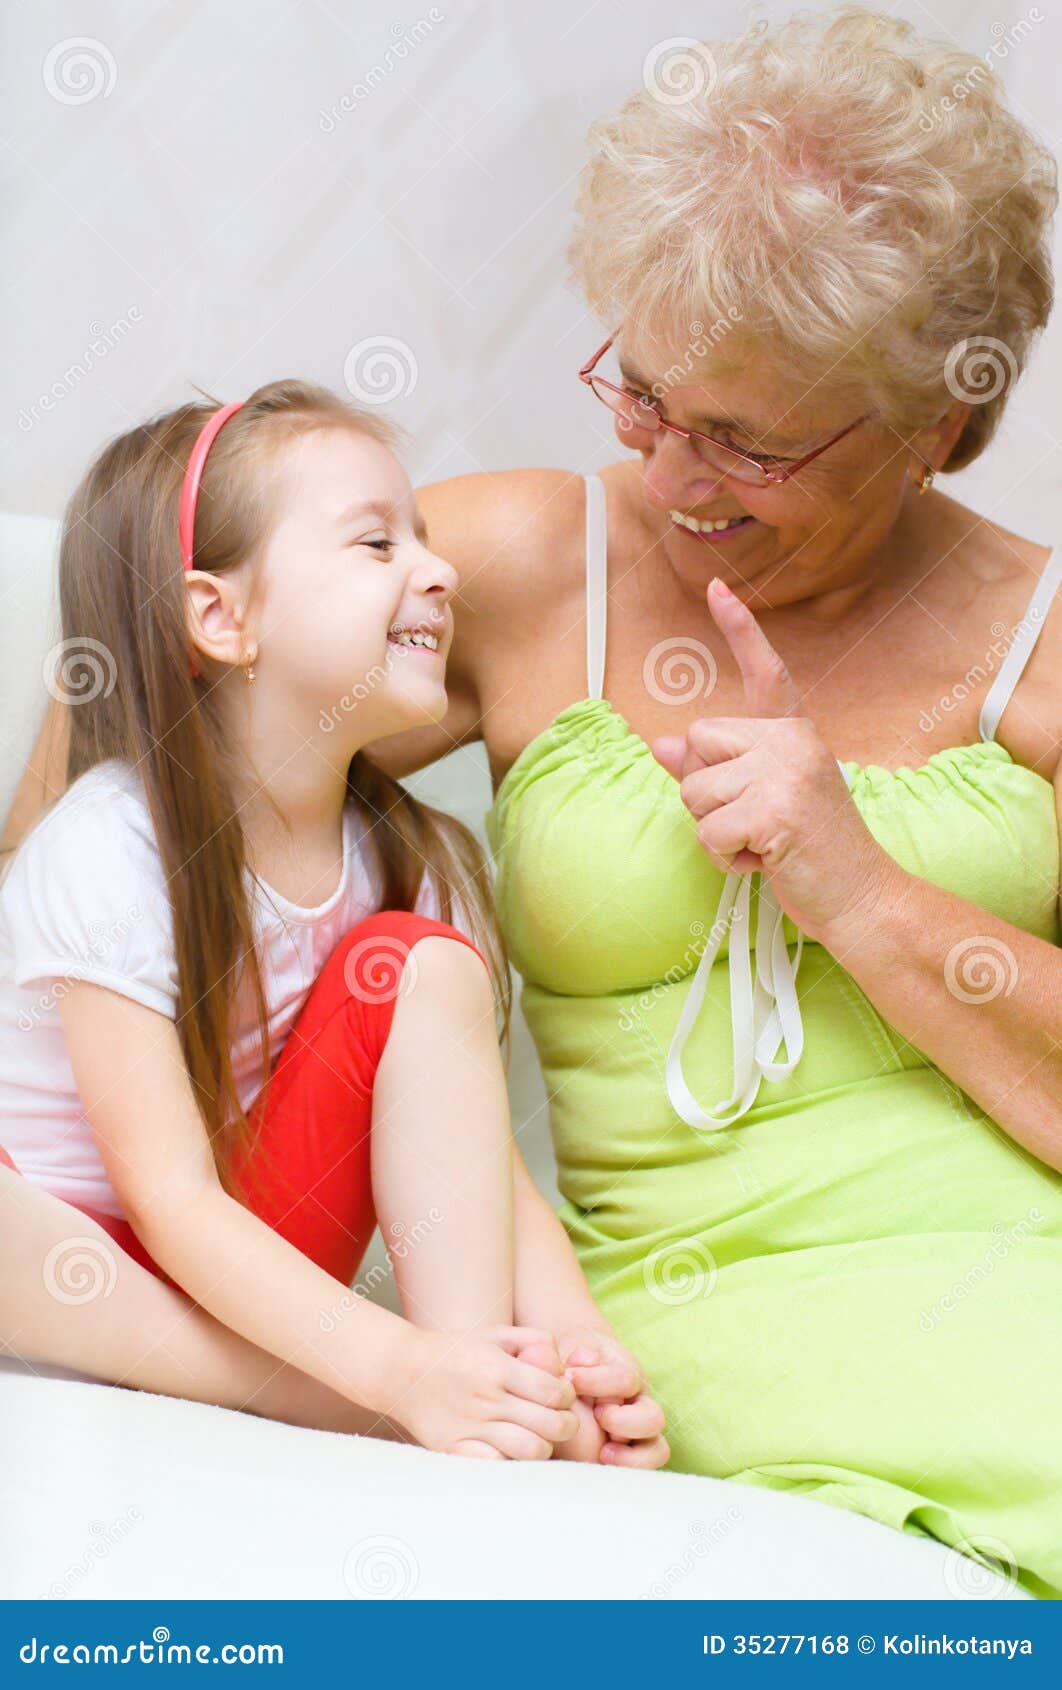 Девушка лижет бабушкам. Внучка полизала бабушке. Бабушка с внучкой Лесбиан. Бабушка говорит внучке.